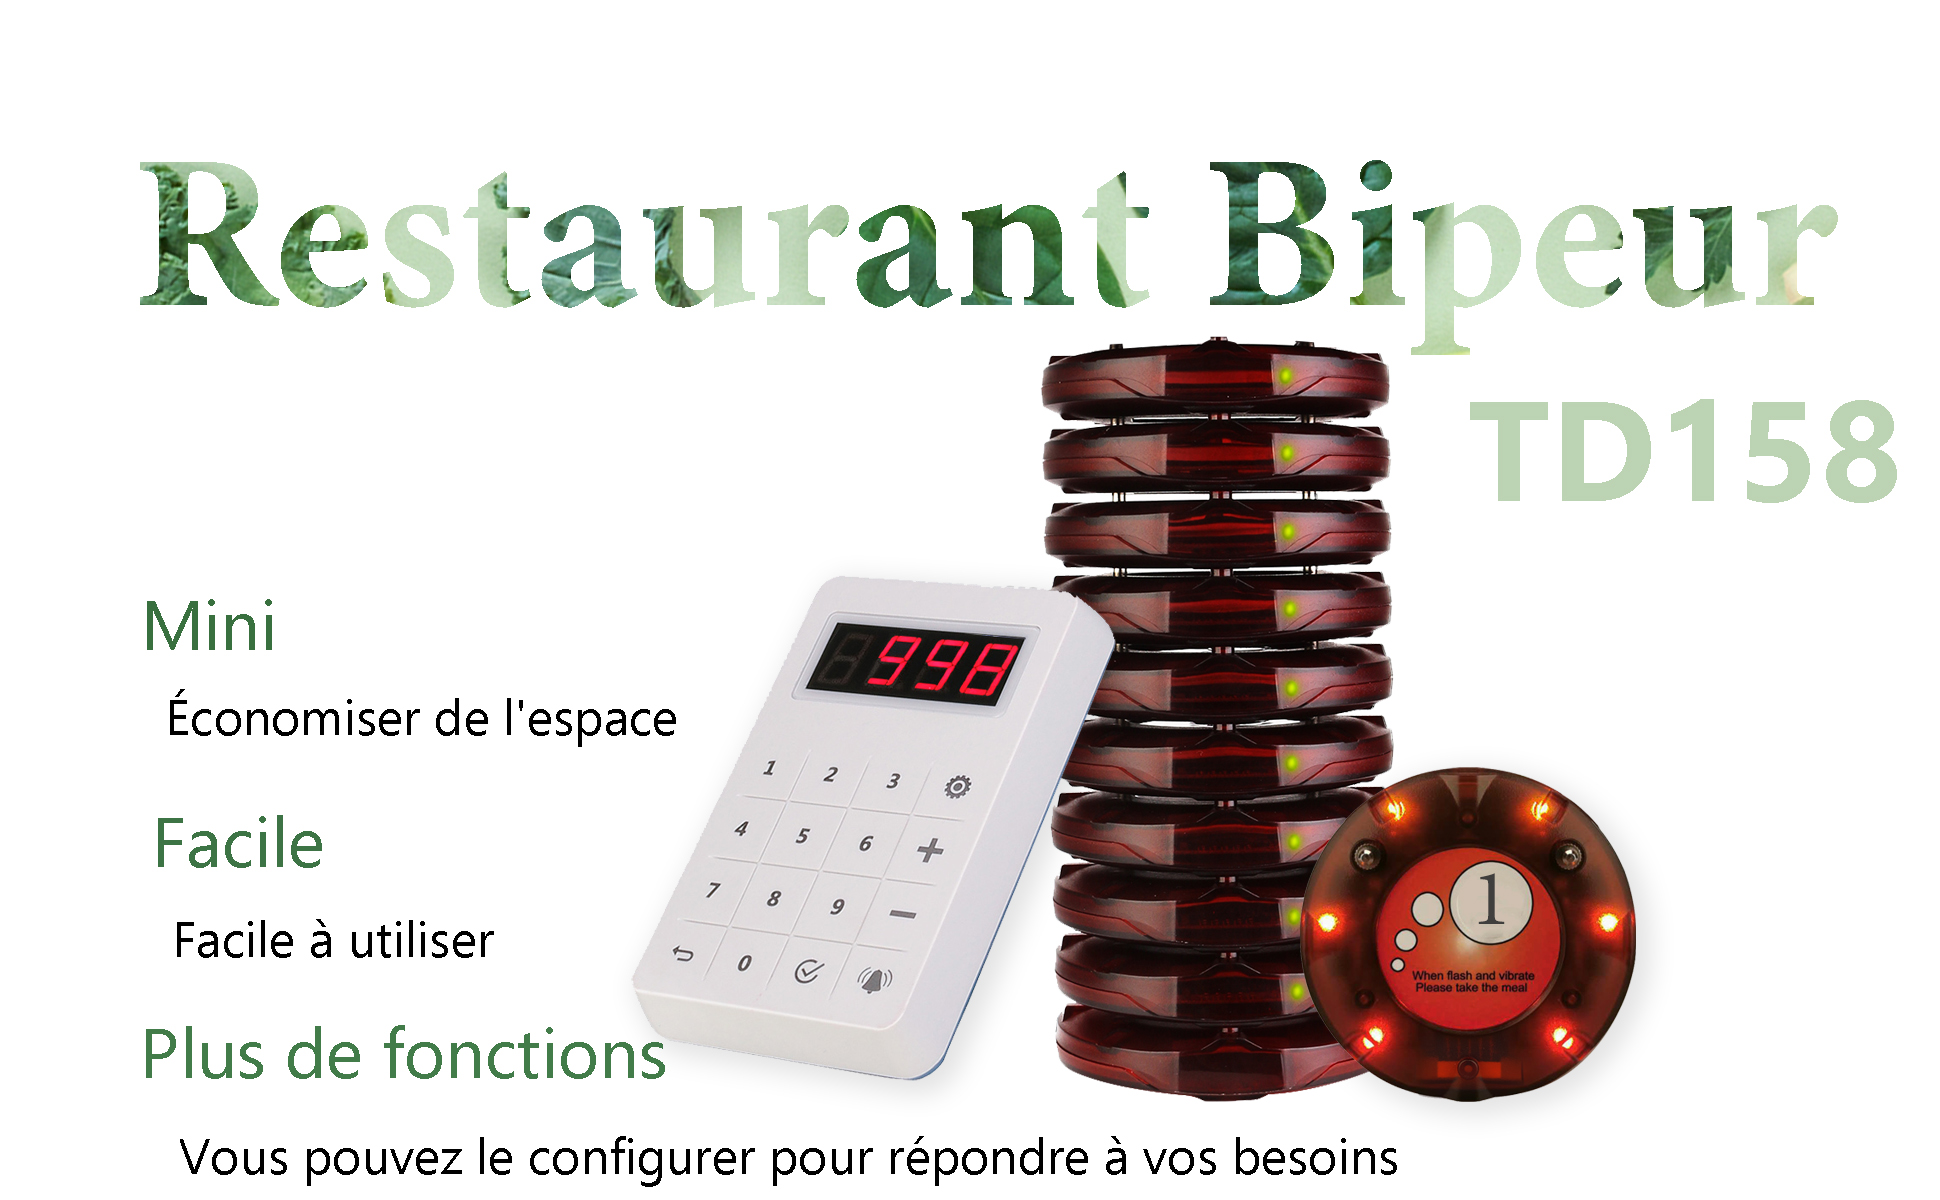 Retekess TD158 Restaurant Bipeur Mini Système d'Appel sans Fil Tube Écran  Tactile Charge Lumineux(1 Émetteur Clavier + 20 Pages)